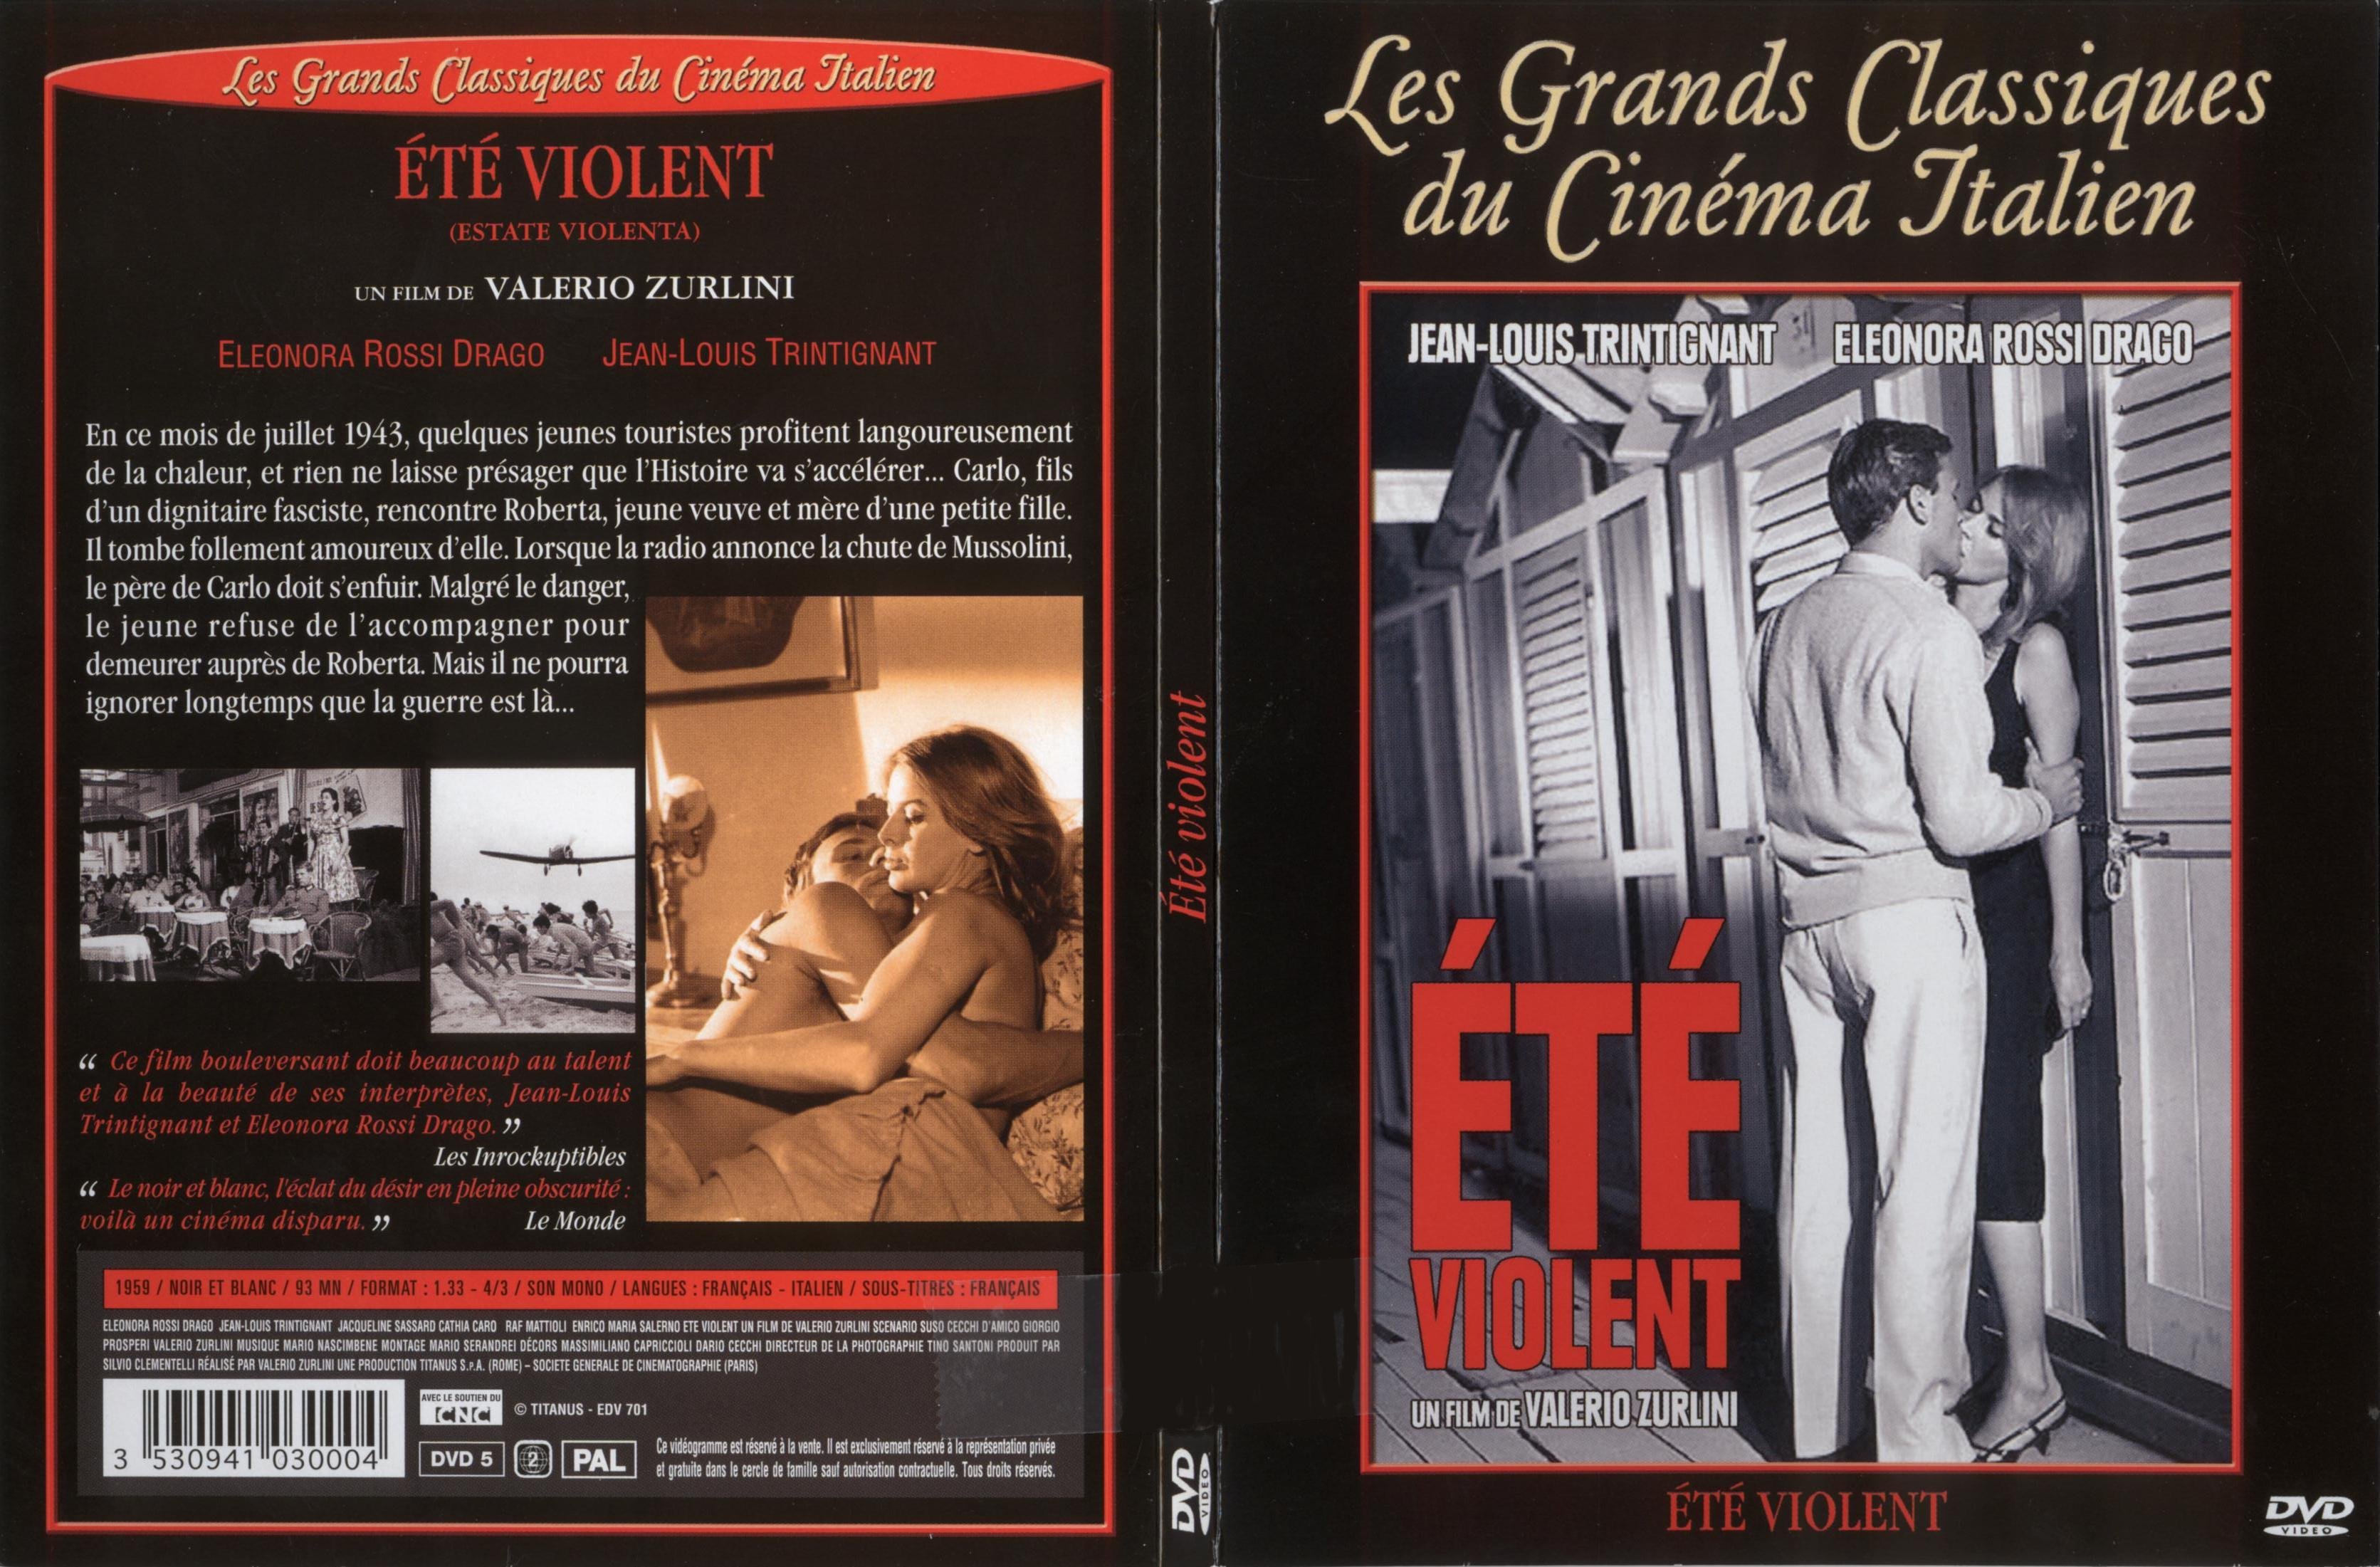 Jaquette DVD Et violent